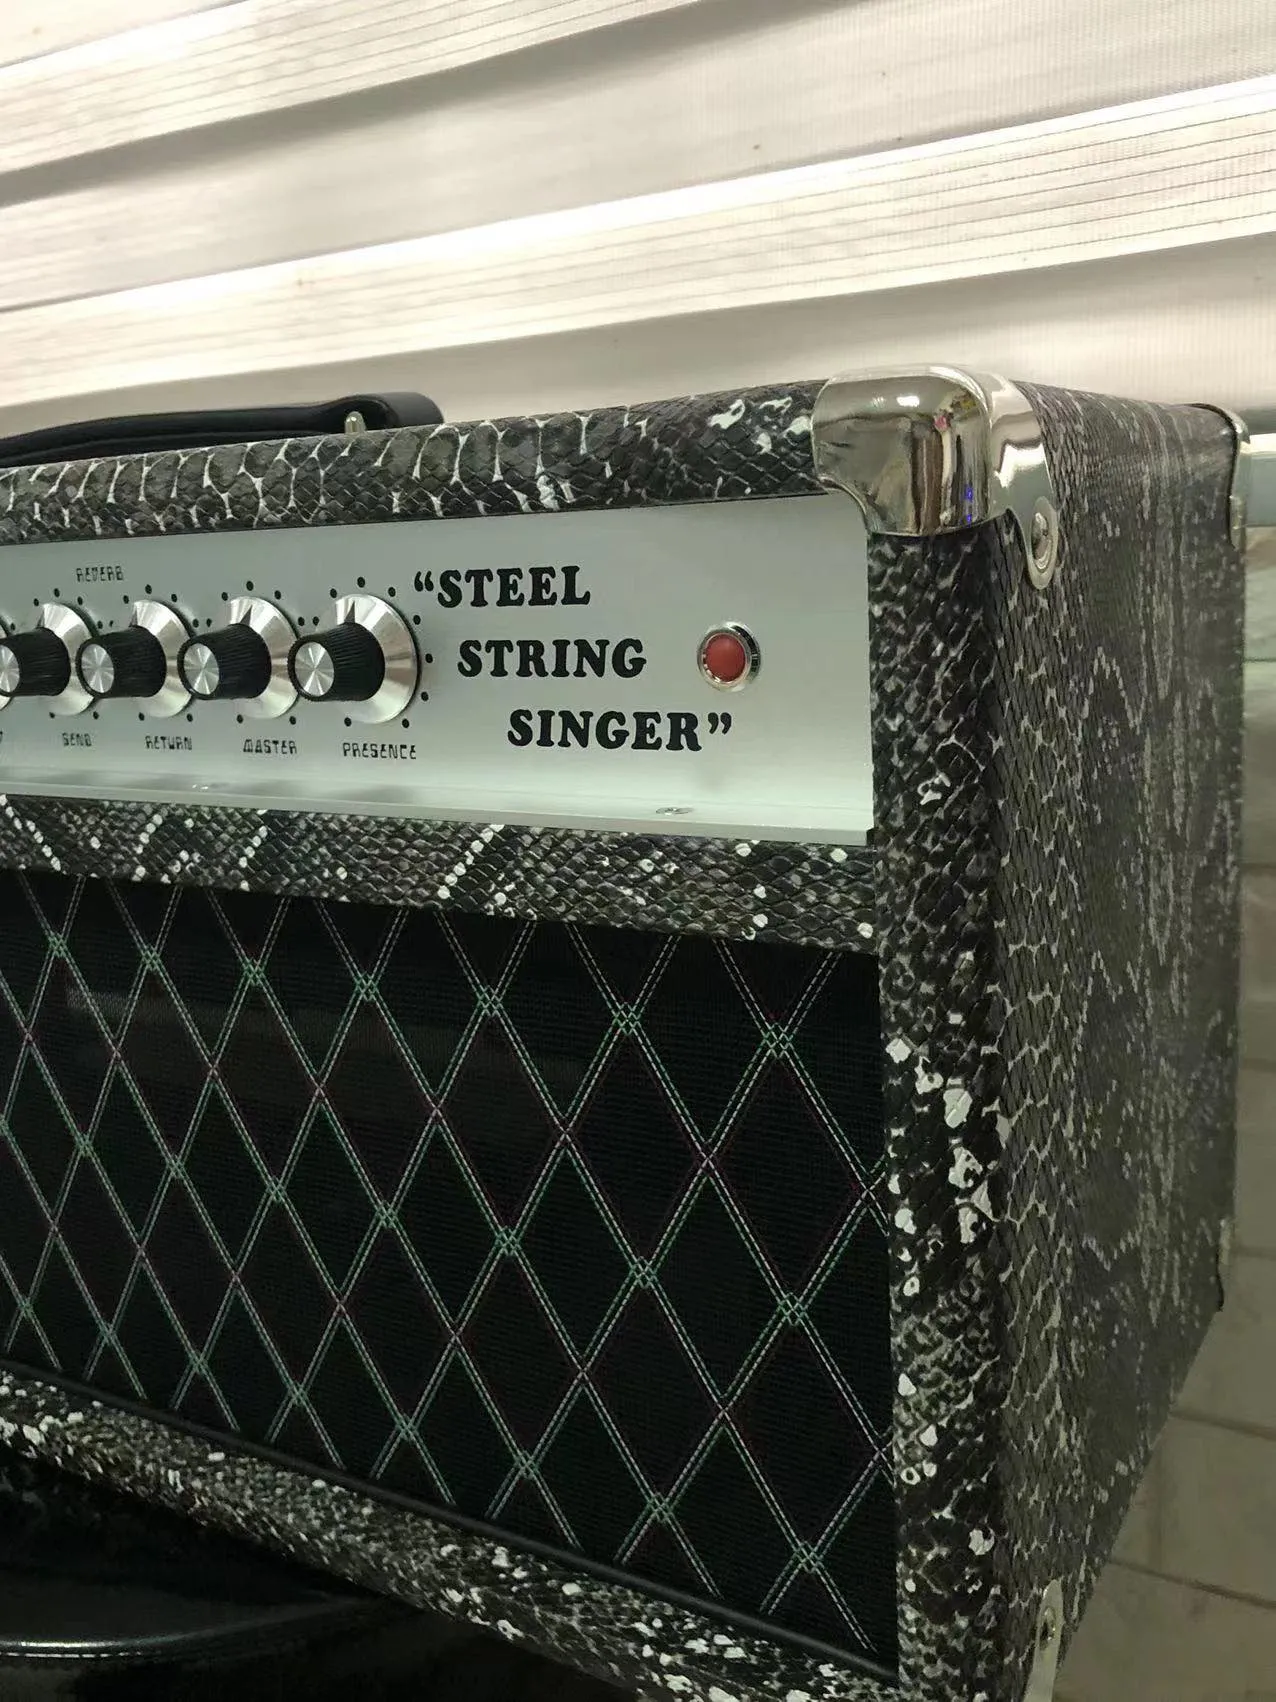 Benutzerdefinierte Dumble Tone SSS Steel String Singer von Grand 20W 50W 100W Fell in Snake Tolex